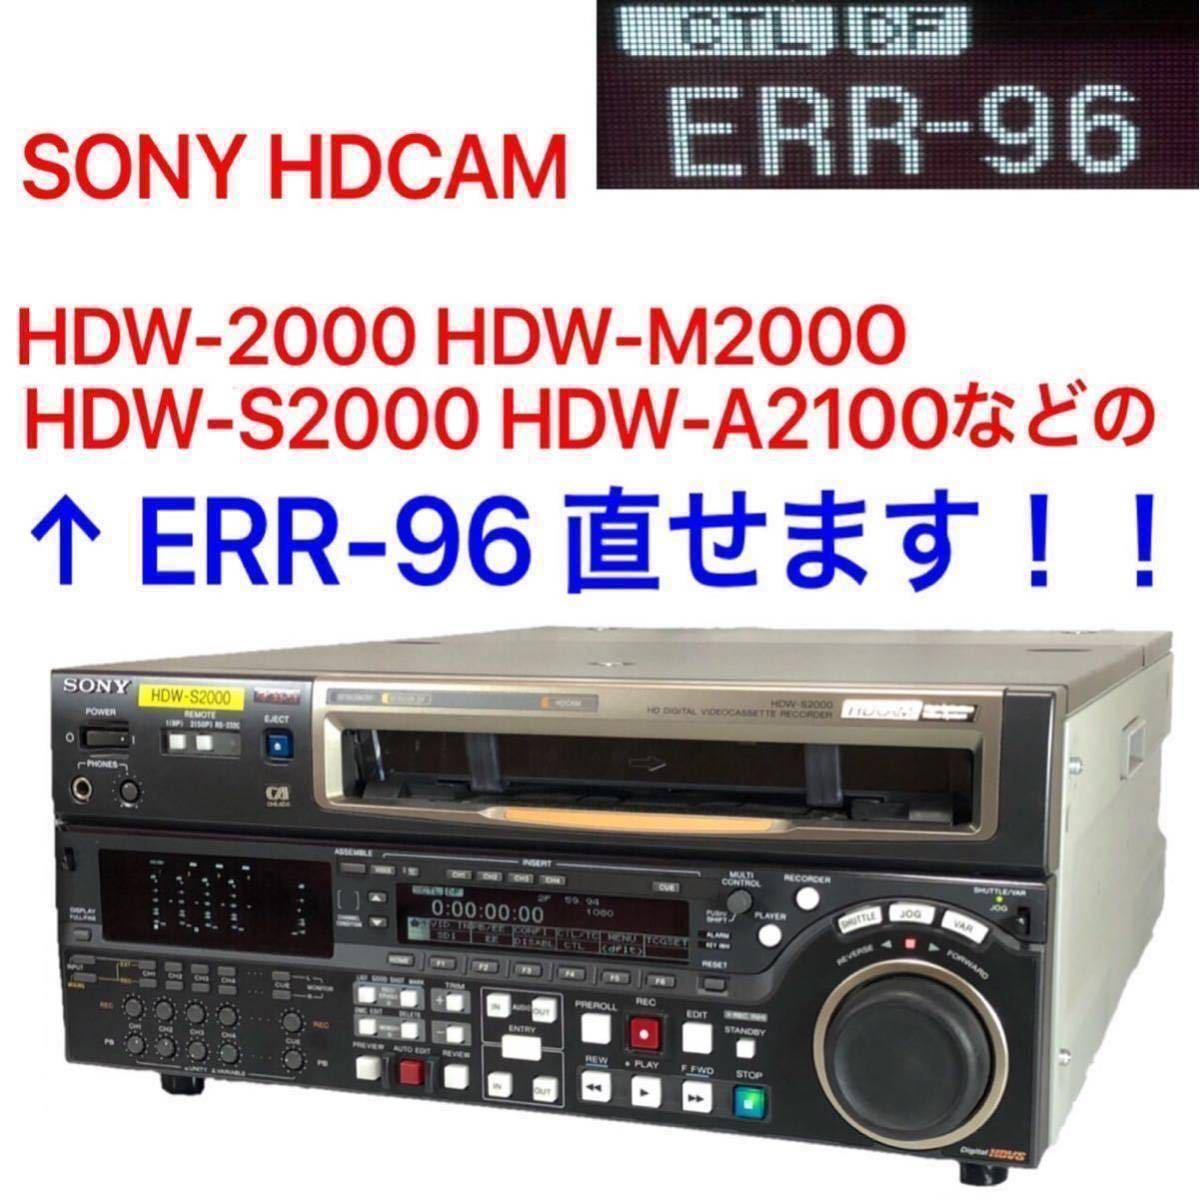 格安 SONY HDCAM ERR-96 直せます！！HDW-2000 HDW-M2000 HDW-S2000 HDW-A2100 バックアップバッテリー 交換 02 プロ用、業務用